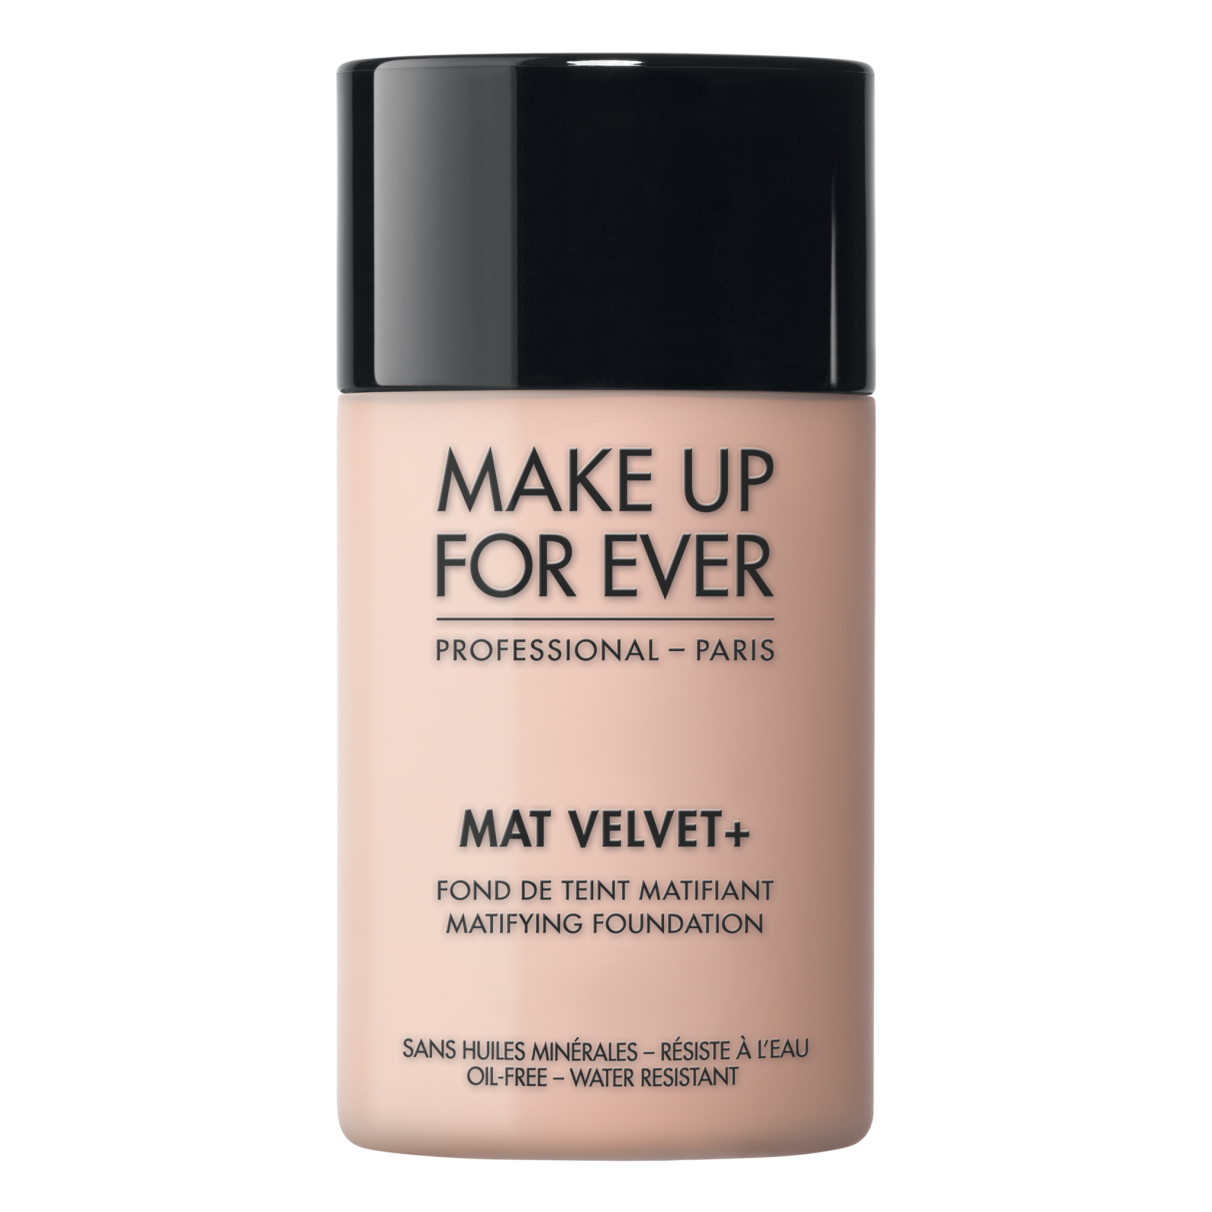 Makeup forever matte velvet foundation